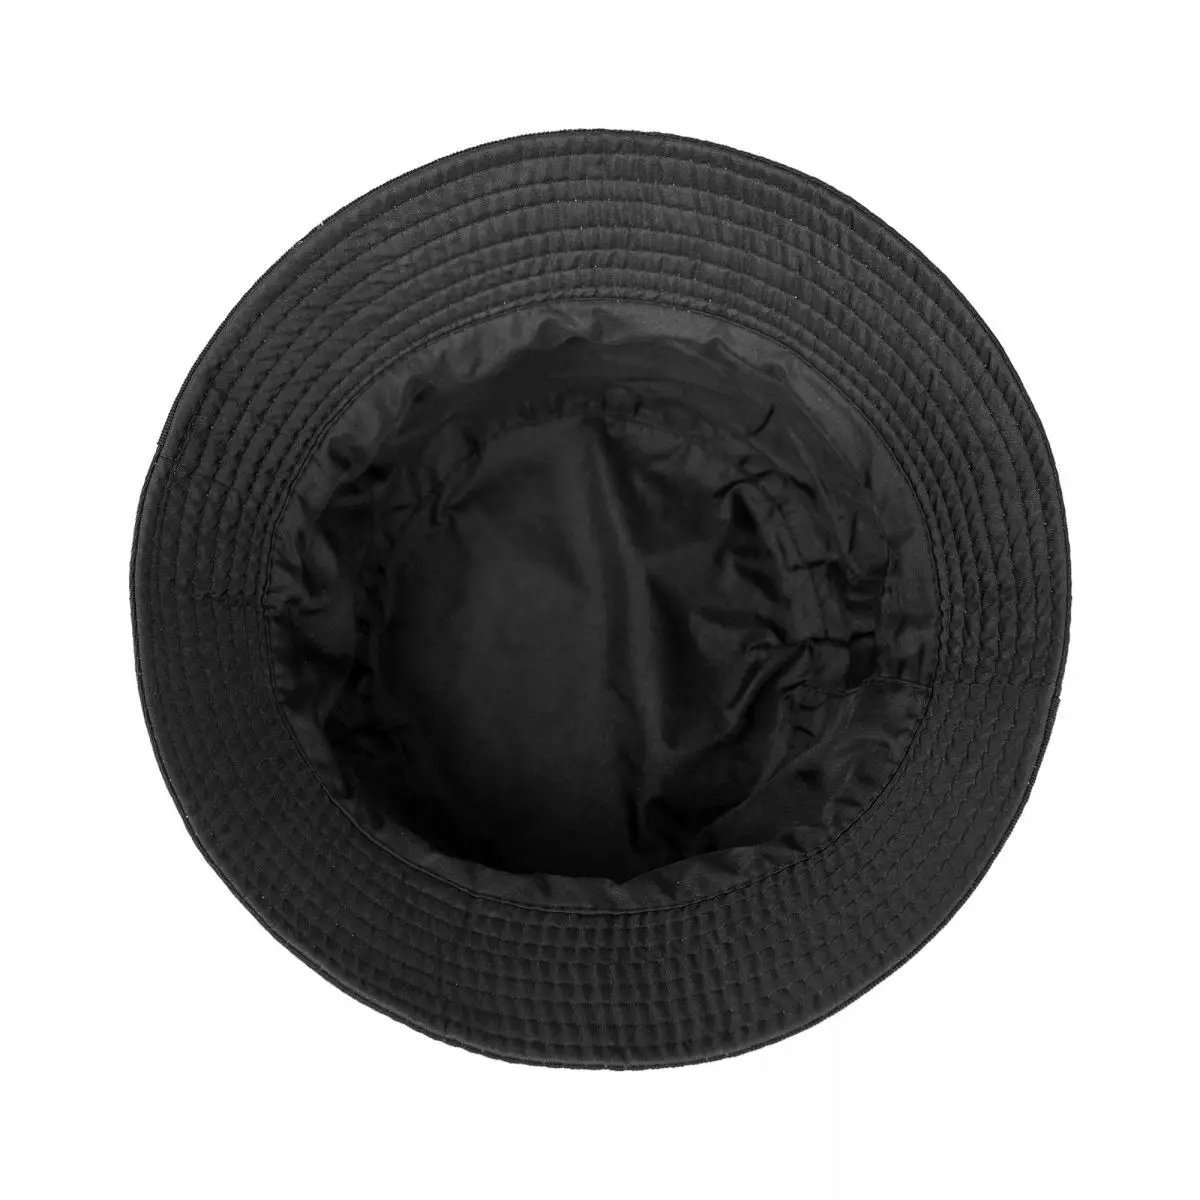 Новая торговая марка Clan-Wu, милые уличные шляпы для мужчин и женщин